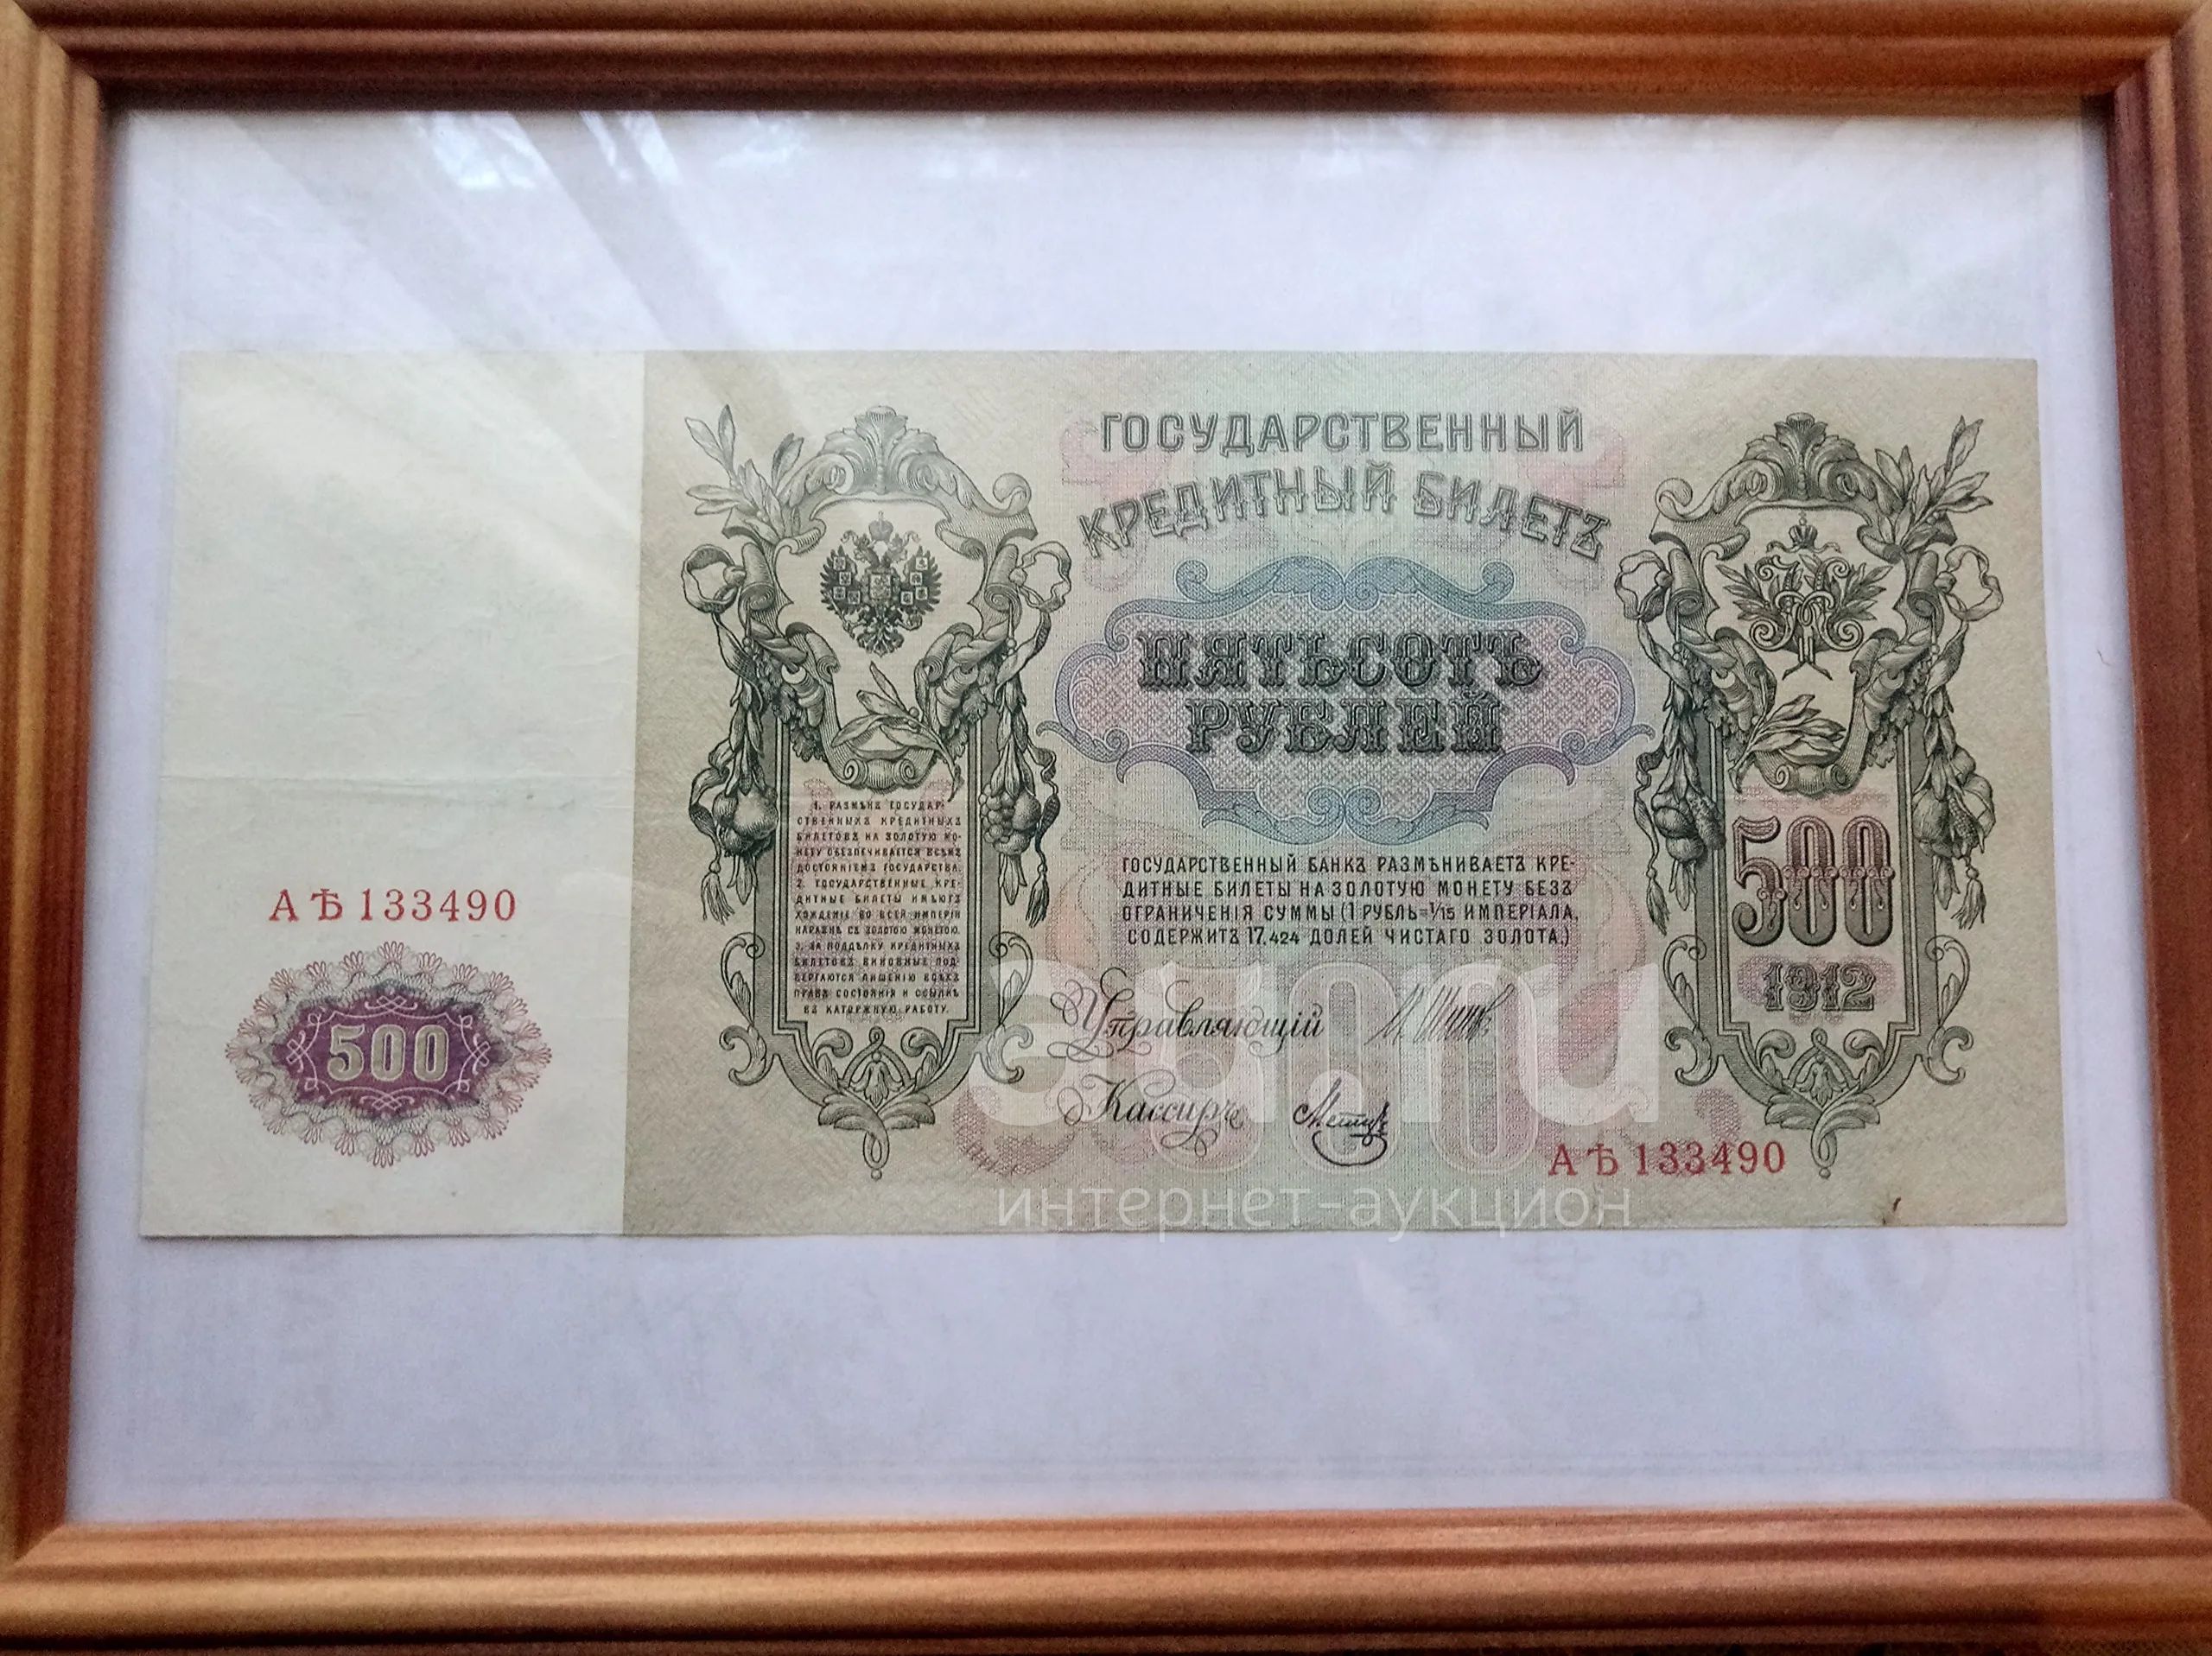 Купюры мм. 500 Рублей 1912. Банкнота 500 рублей 1912 года фото.